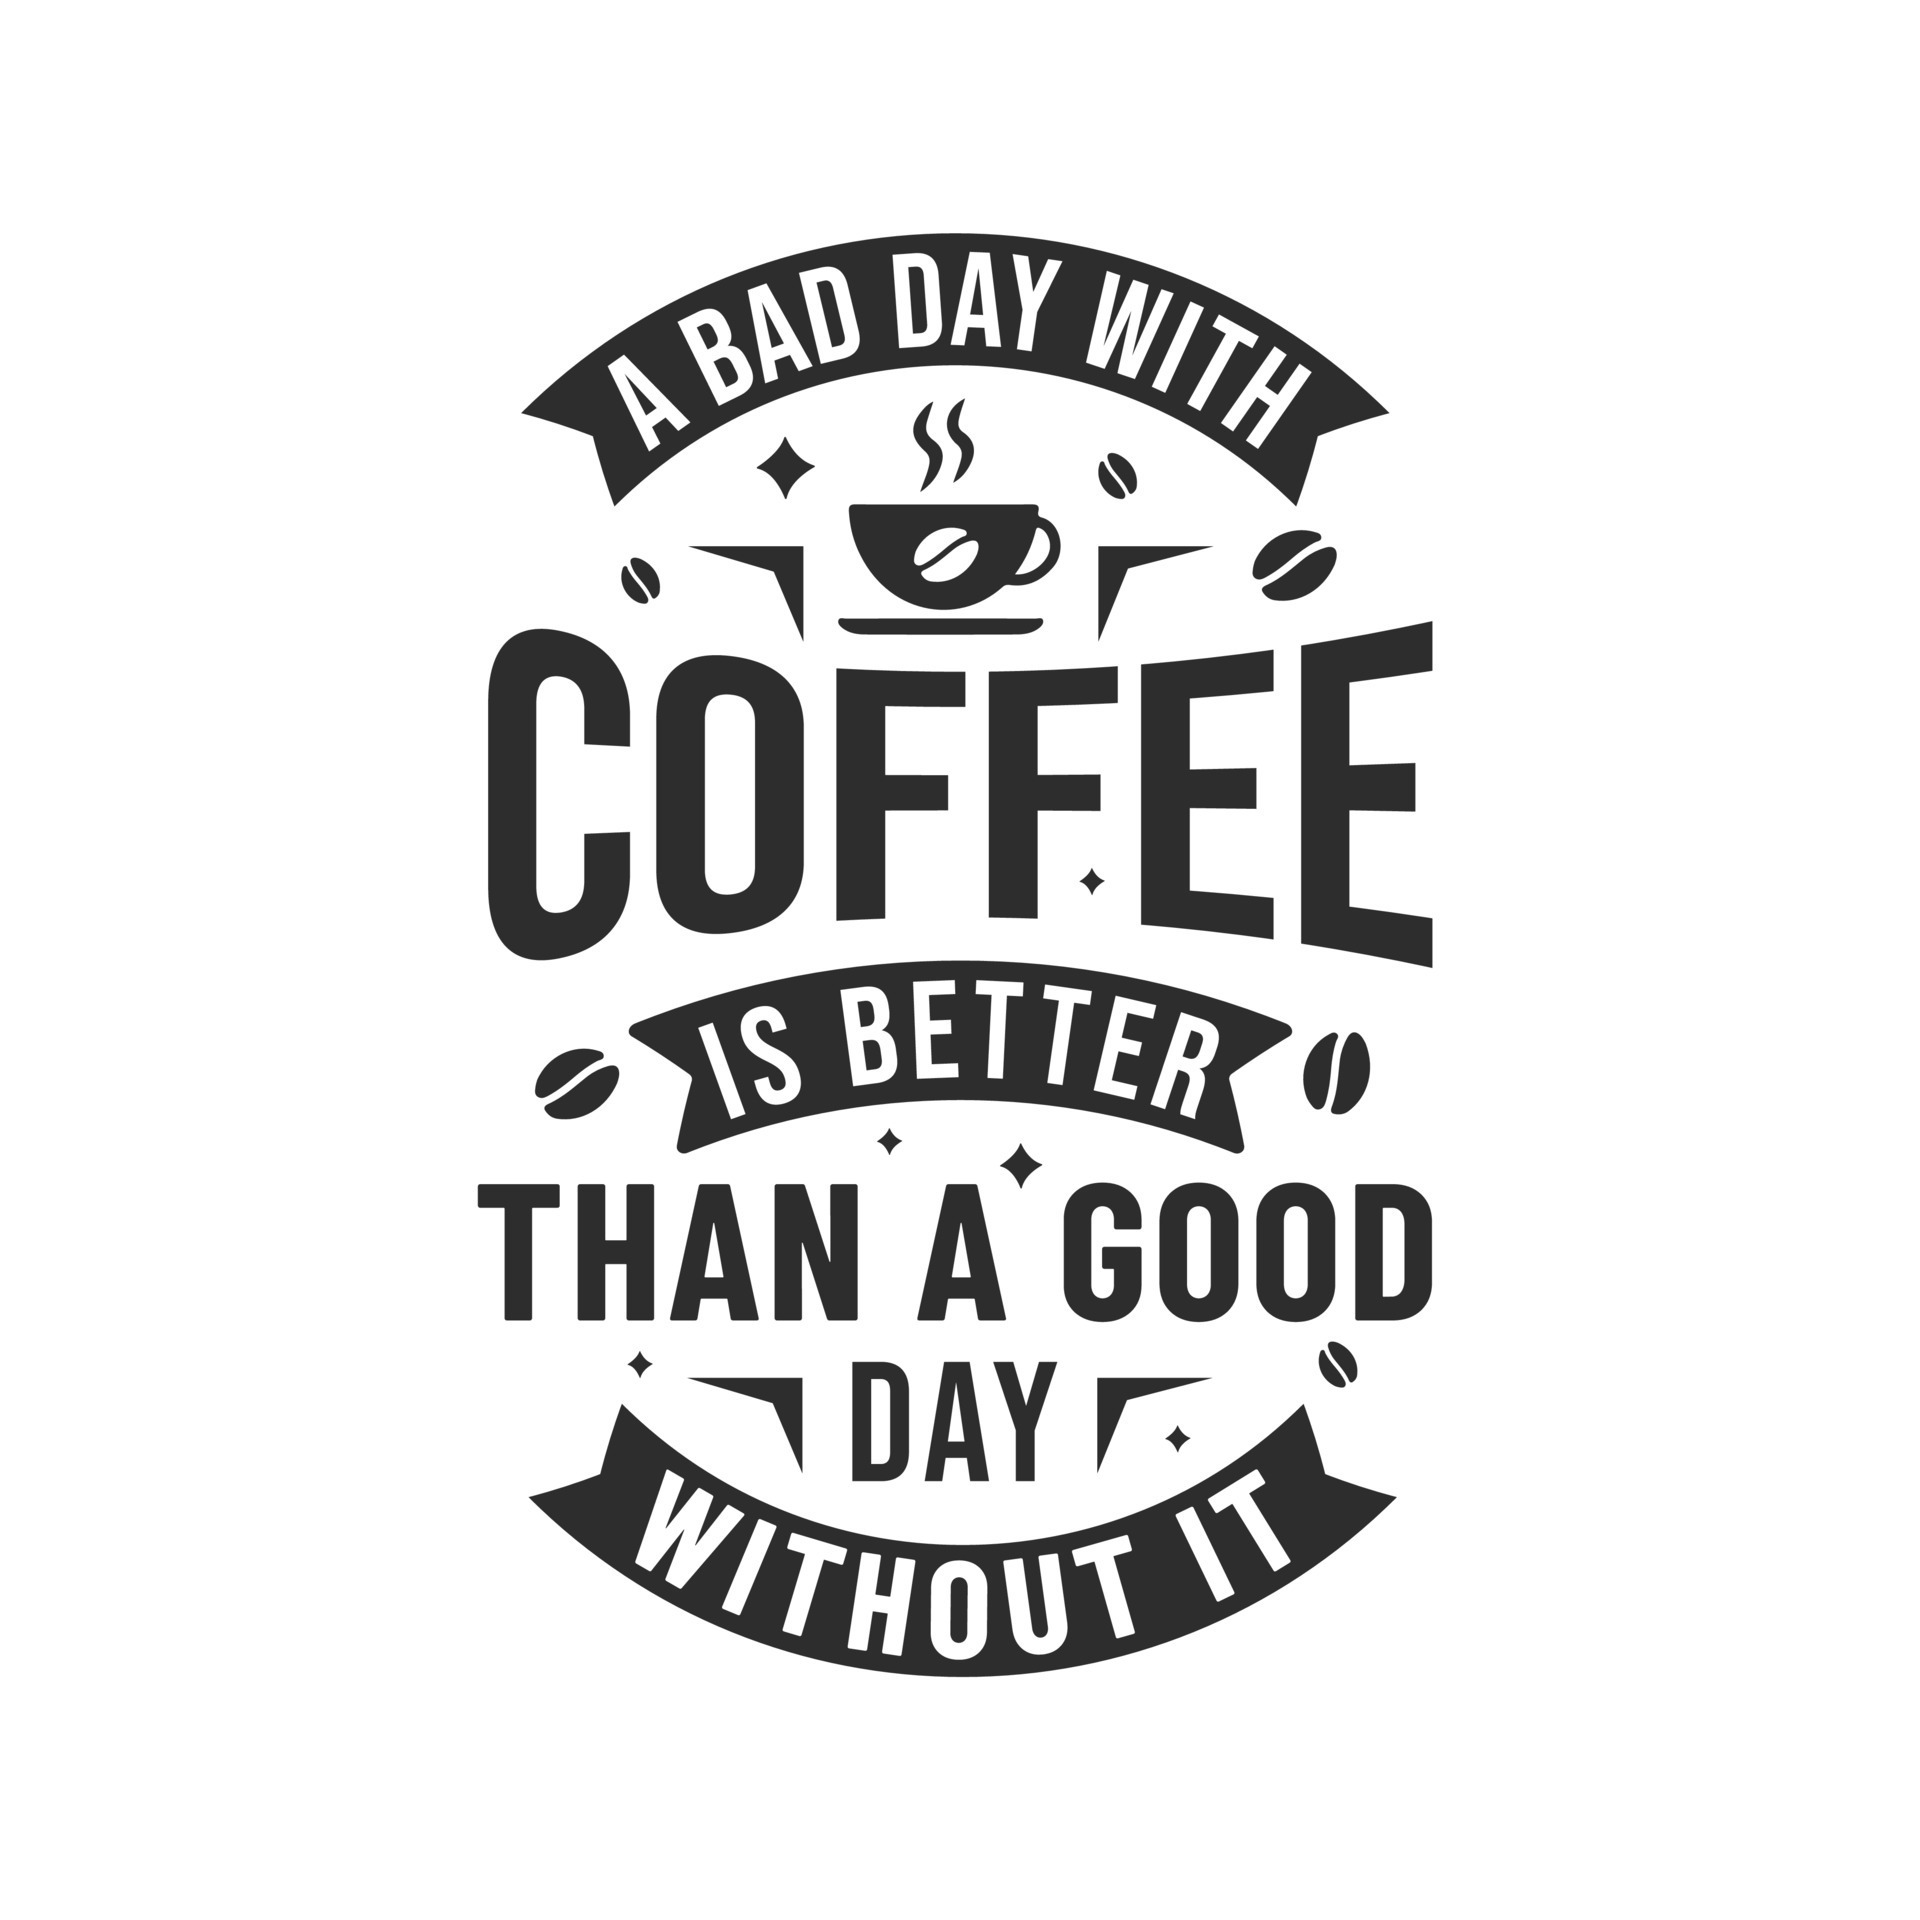 um dia ruim com café é melhor do que um bom dia sem ele, citação de café  13710348 Vetor no Vecteezy